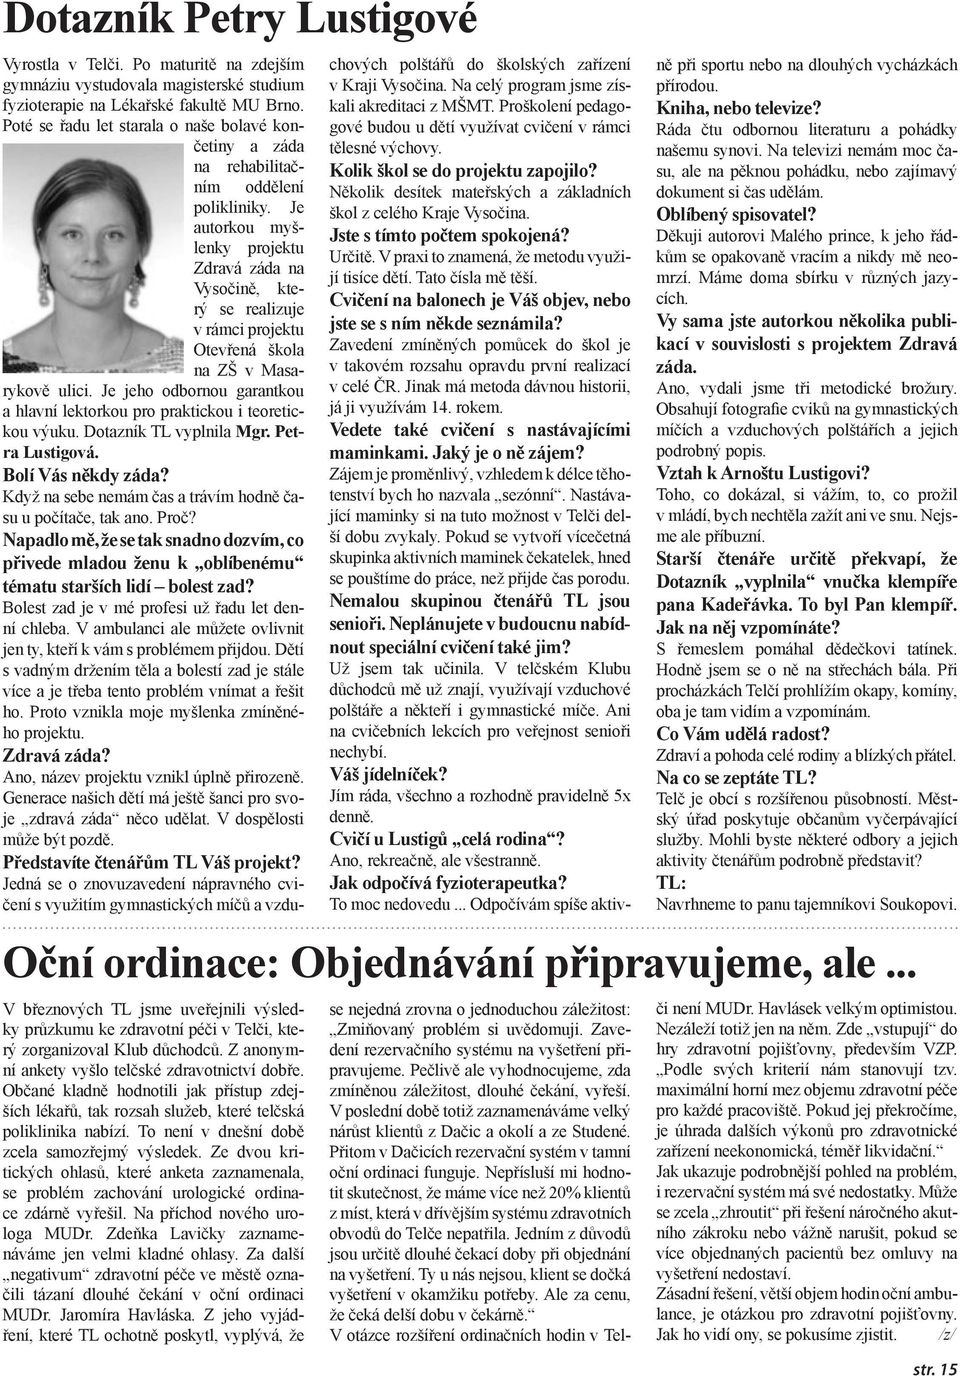 Je autorkou myšlenky projektu Zdravá záda na Vysočině, který se realizuje v rámci projektu Otevřená škola na ZŠ v Masarykově ulici.